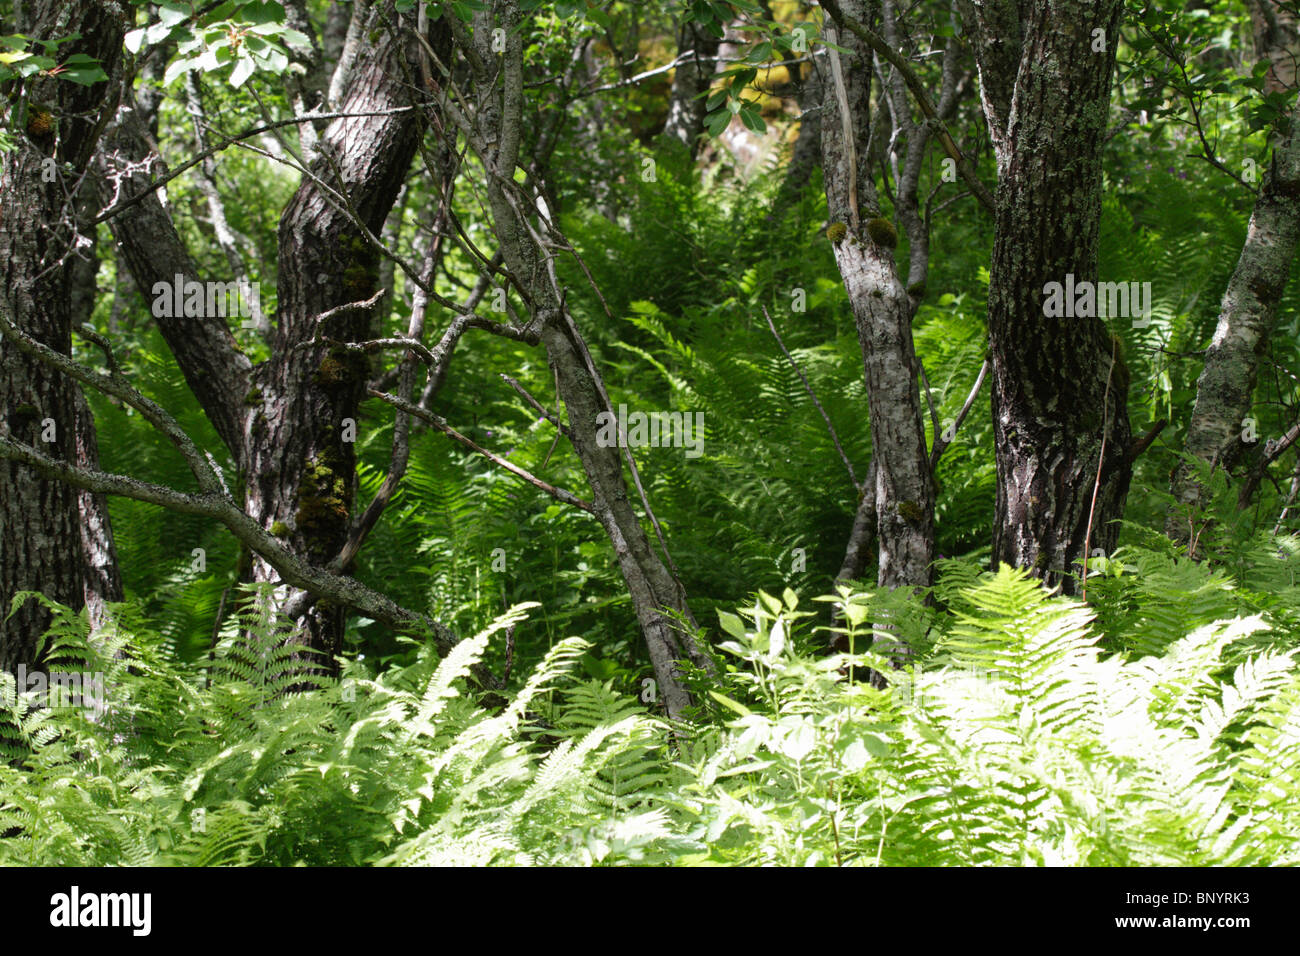 Ferns and birch trees on Landstrykerstien, Hamsund, Hamaroy, Norway Stock Photo